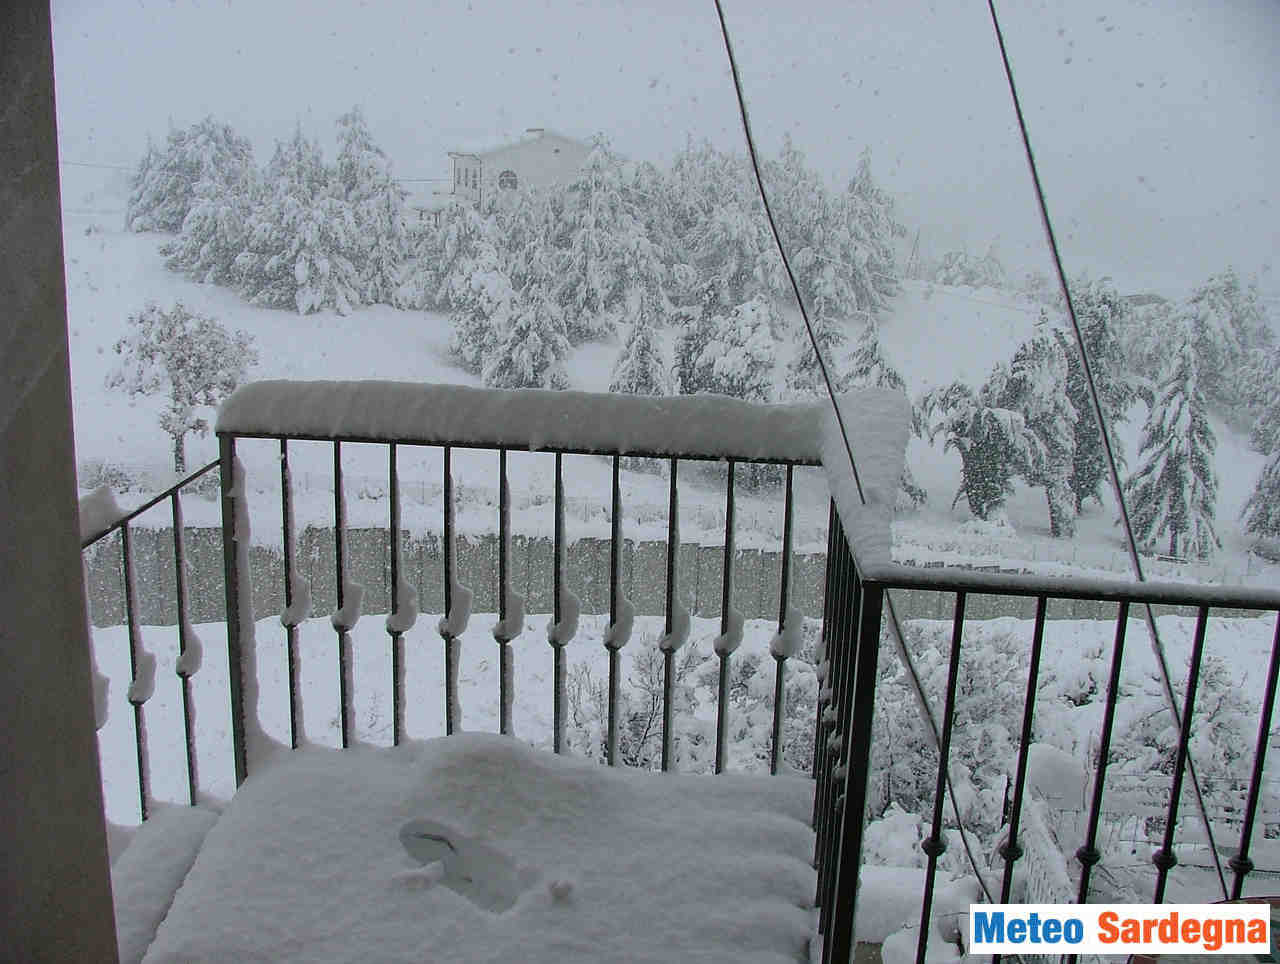 meteo 00002 - Prossimo Inverno, analisi meteo climatica sul rischio neve in Sardegna